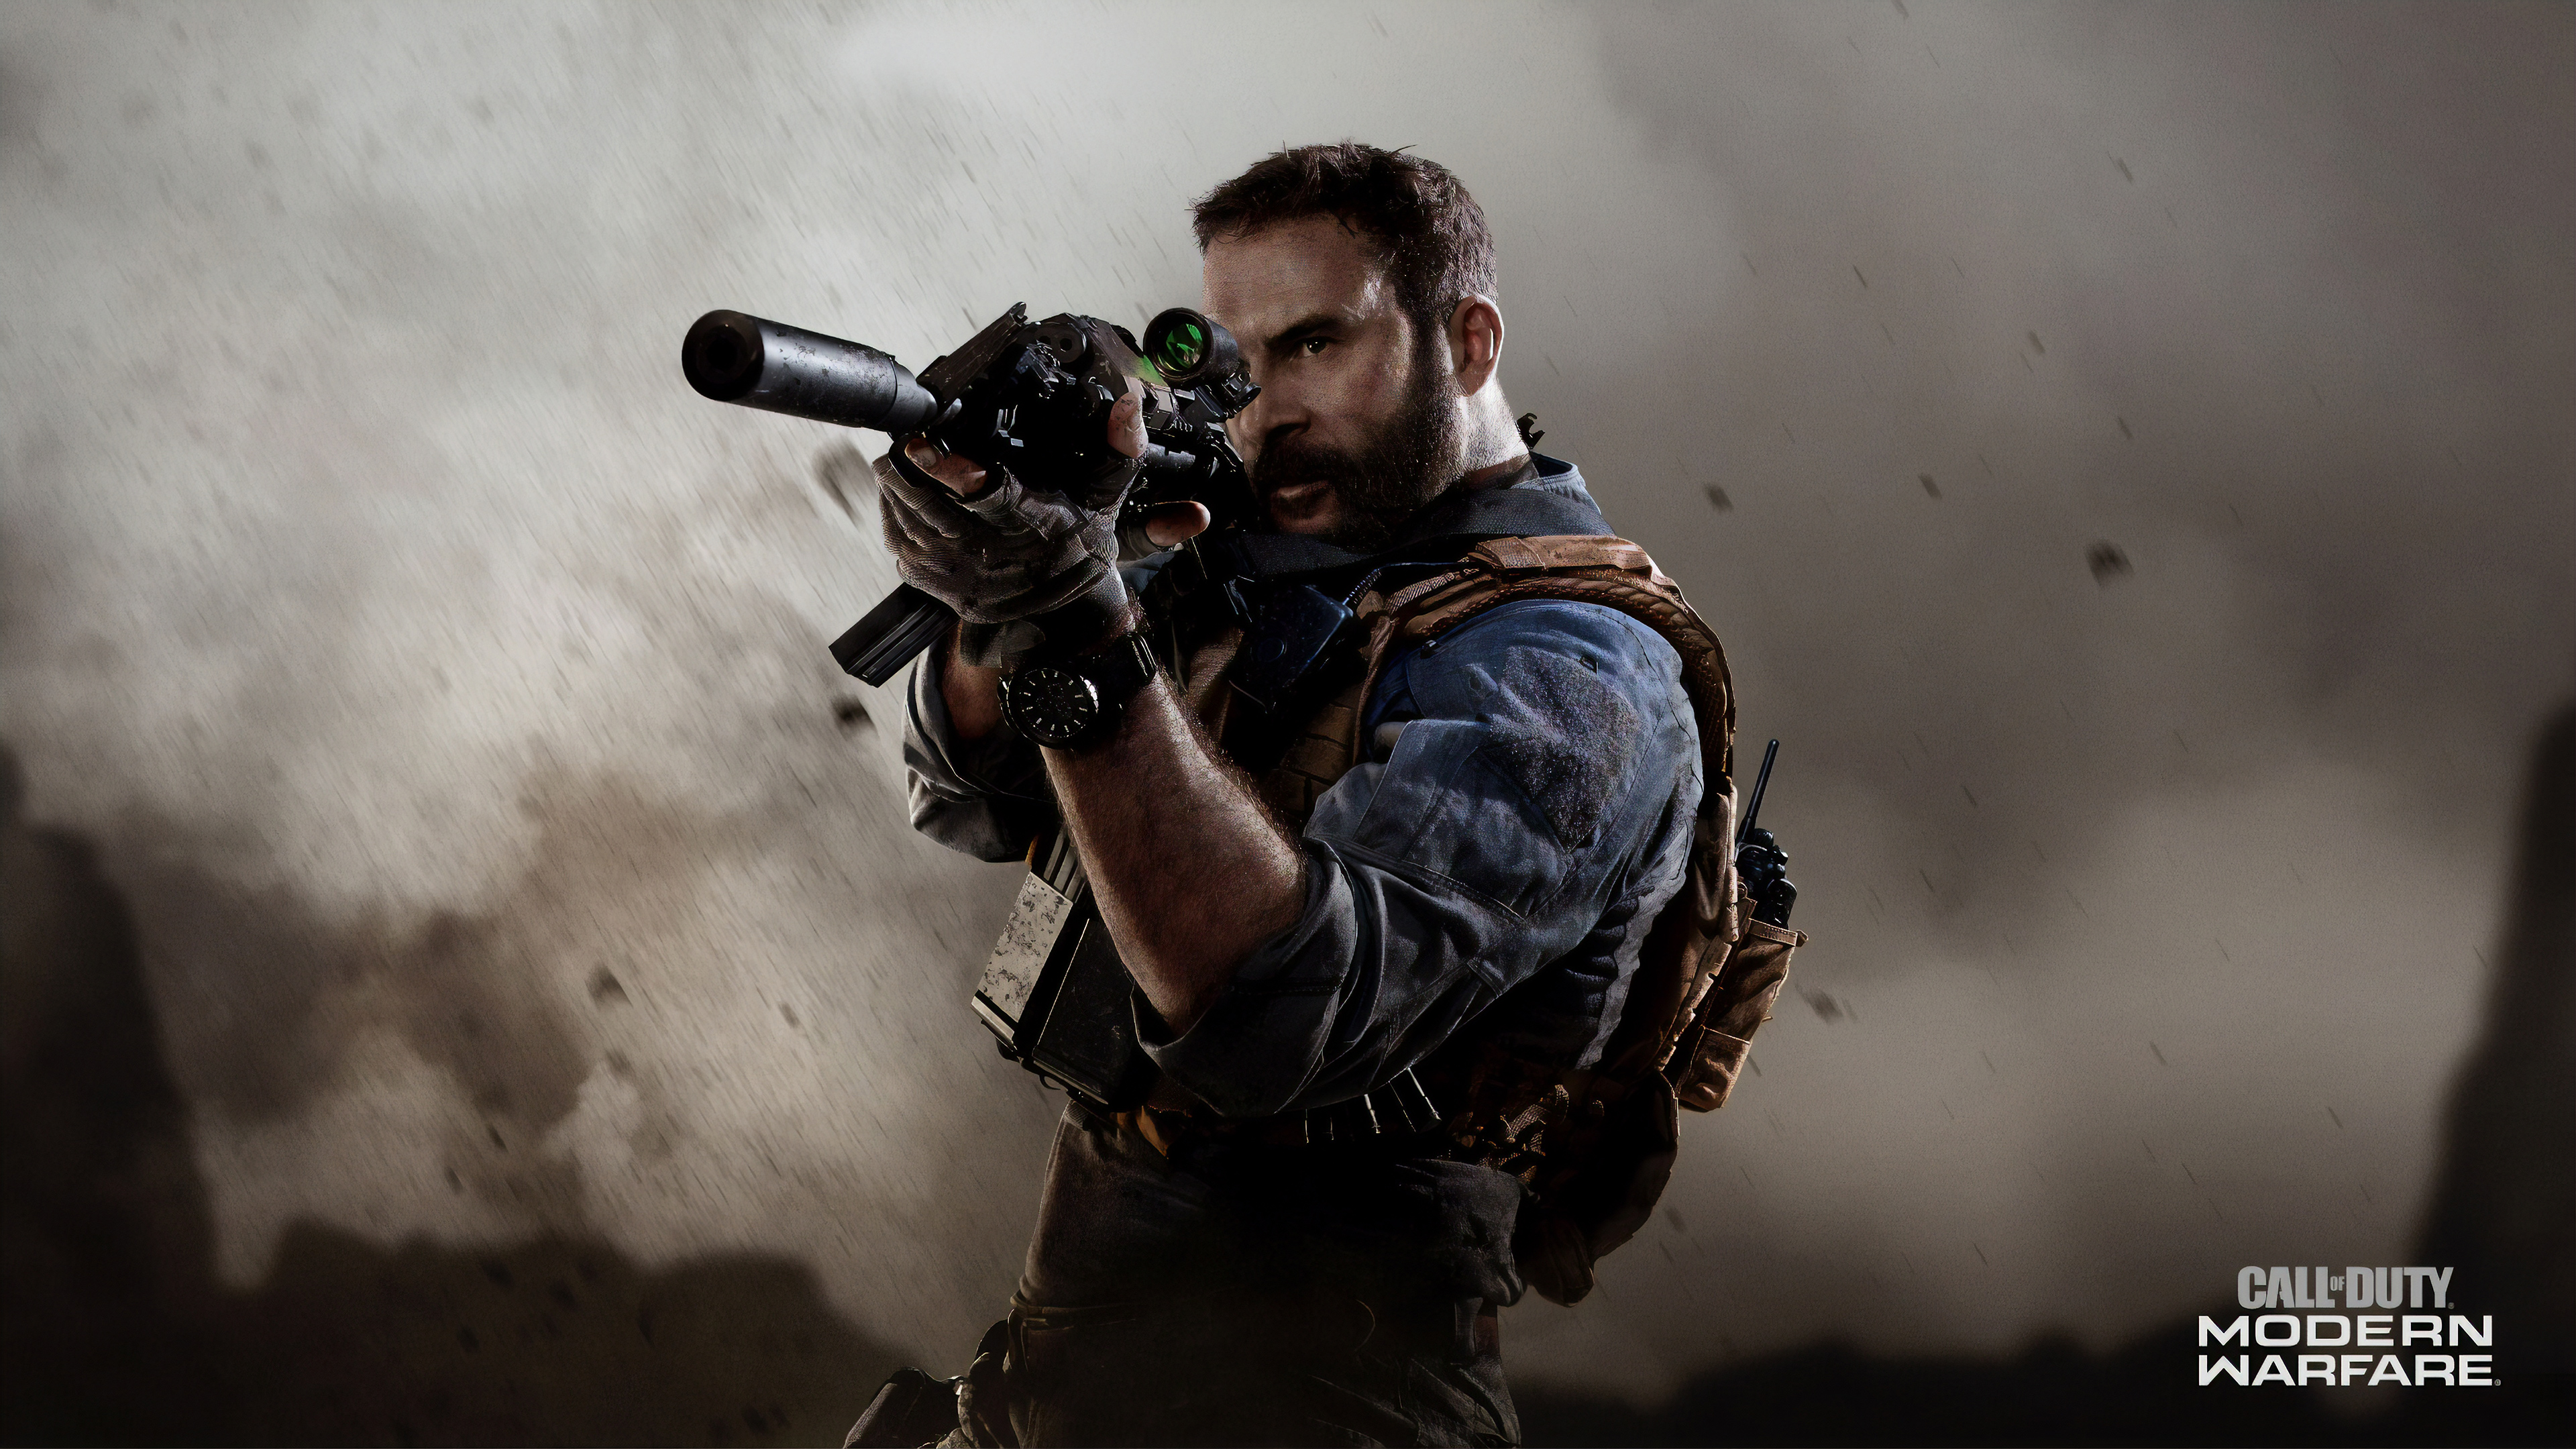 Đắm mình trong thế giới đổ nát chân thật với Call Of Duty Modern Warfare 4k. Được thiết kế với hình ảnh 4k tuyệt đẹp, trò chơi sẽ khiến bạn bị mê hoặc ngay từ những giây đầu tiên. Hãy xem hình ảnh liên quan để ngắm nhìn tình tiết đầy phấn khích và đẹp mắt.